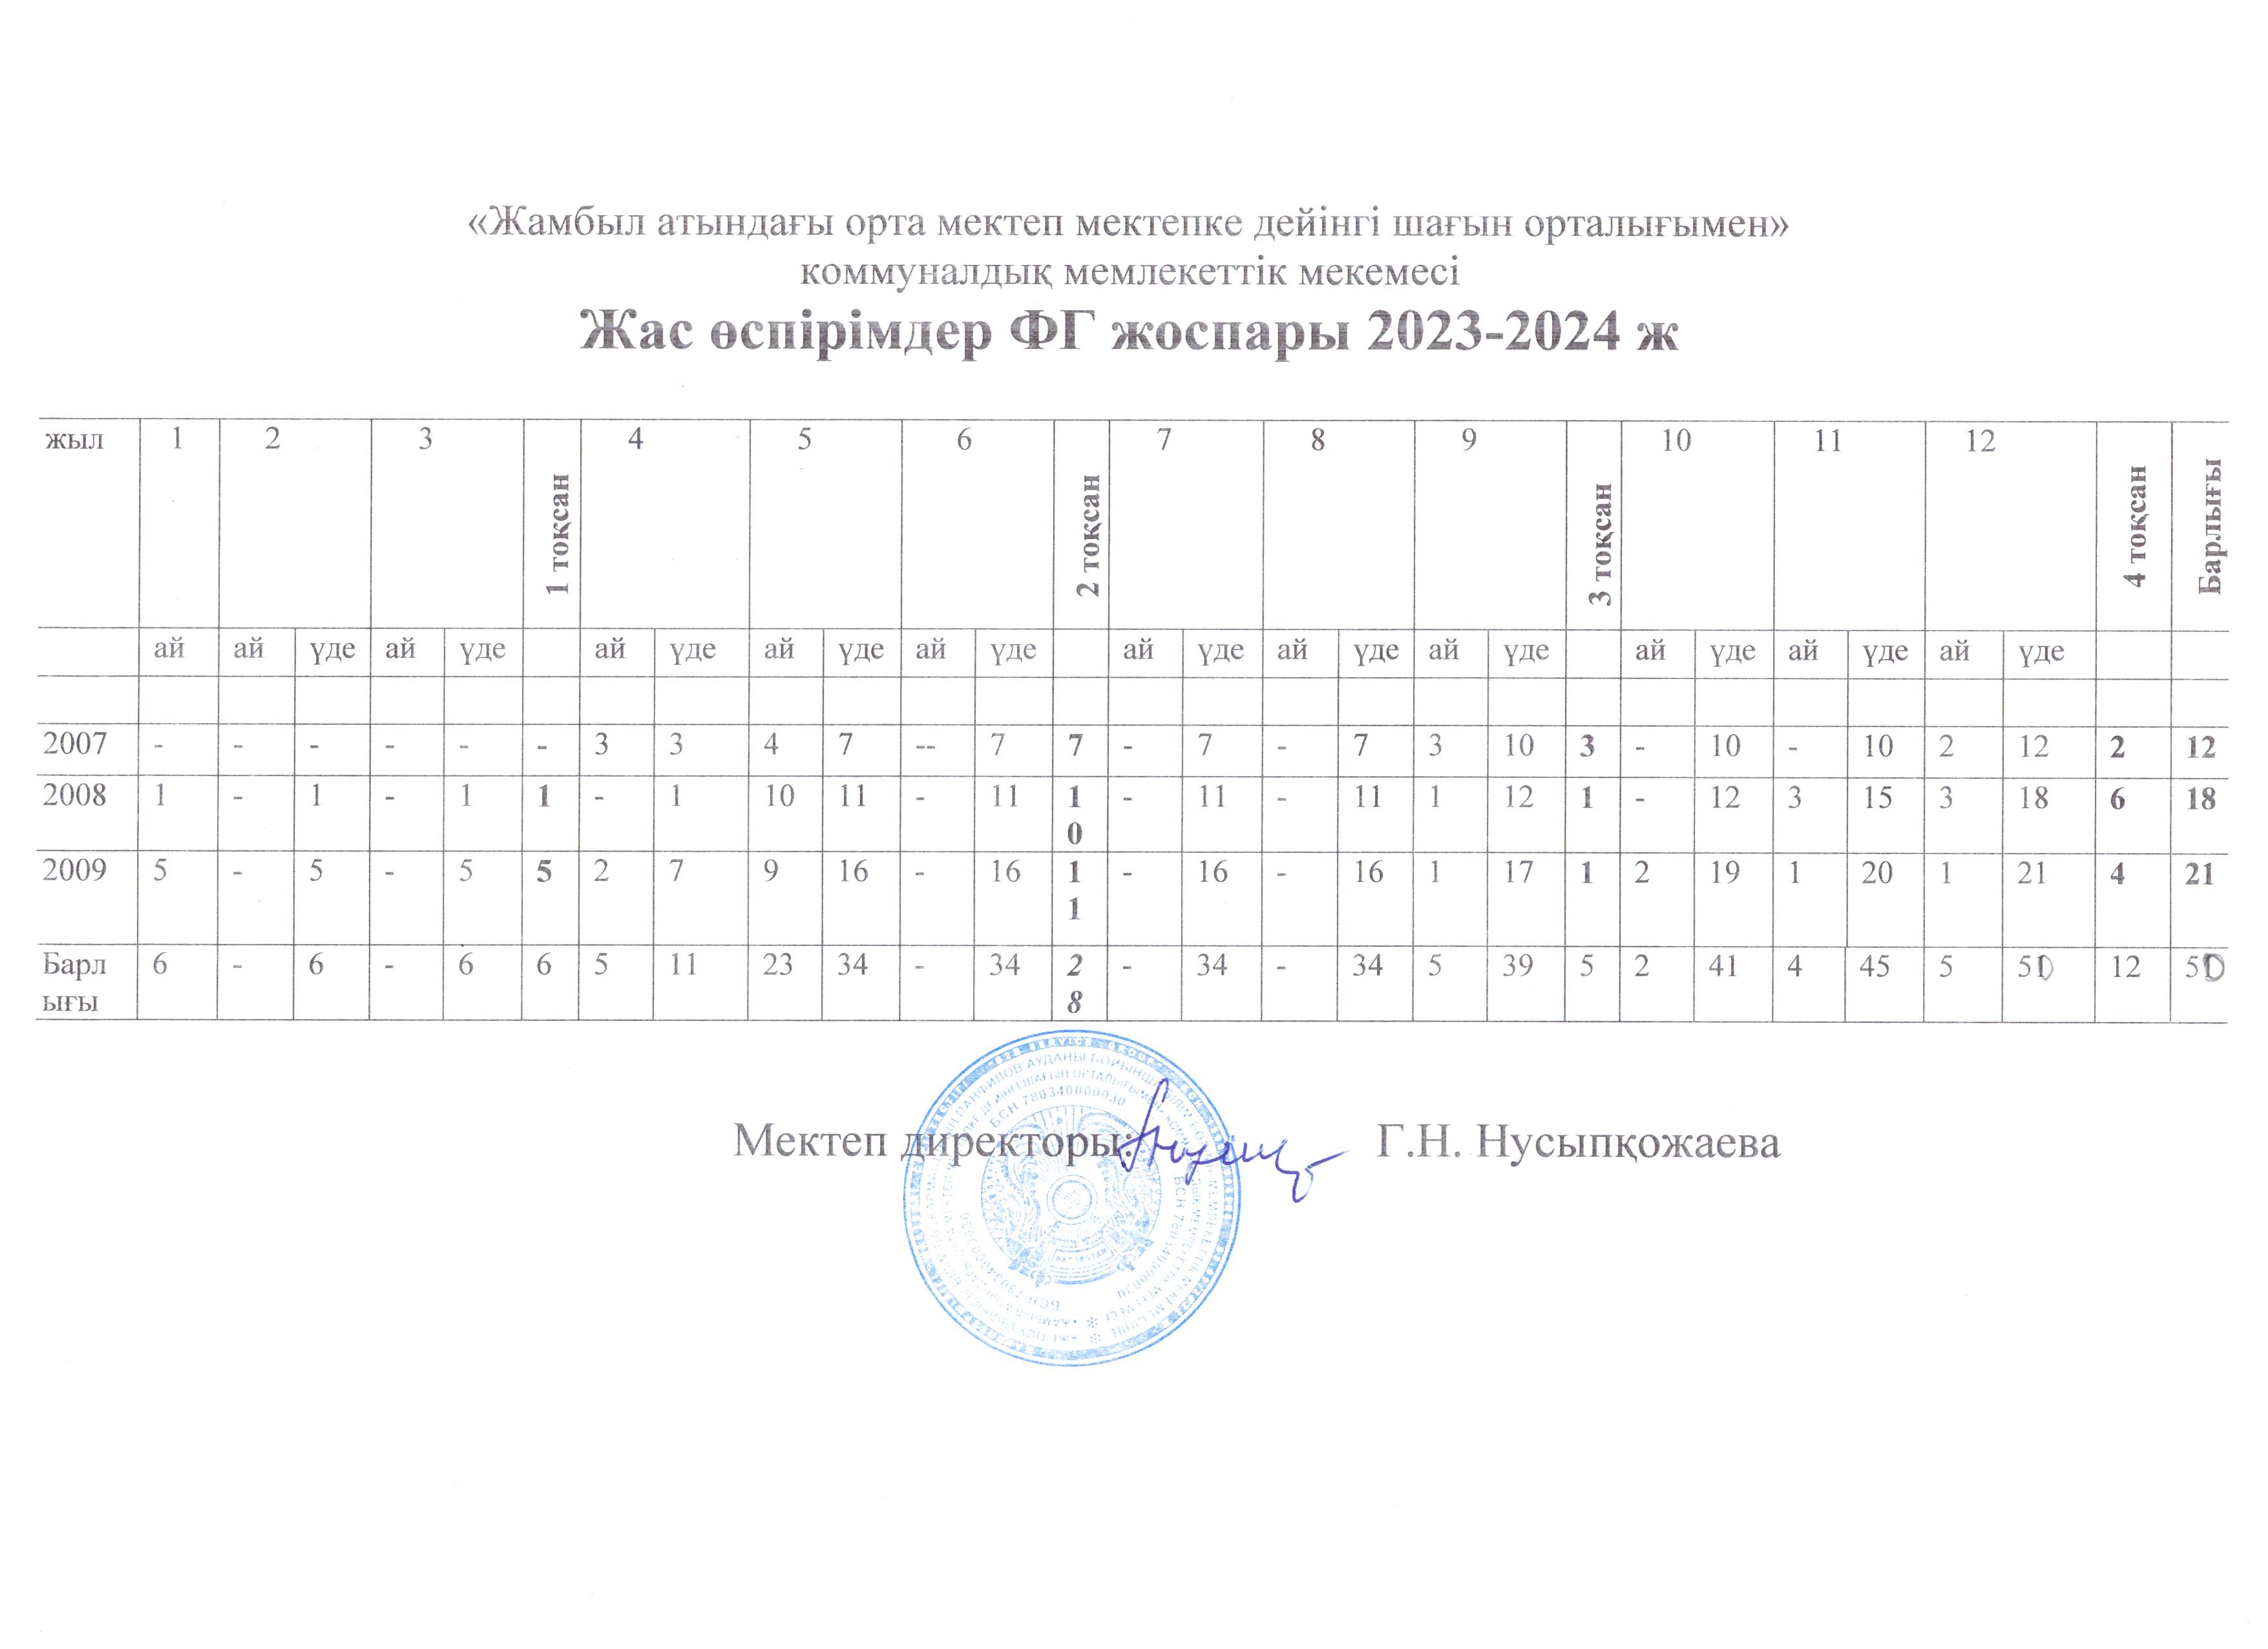 ФГ жоспары 2023-2024 ж